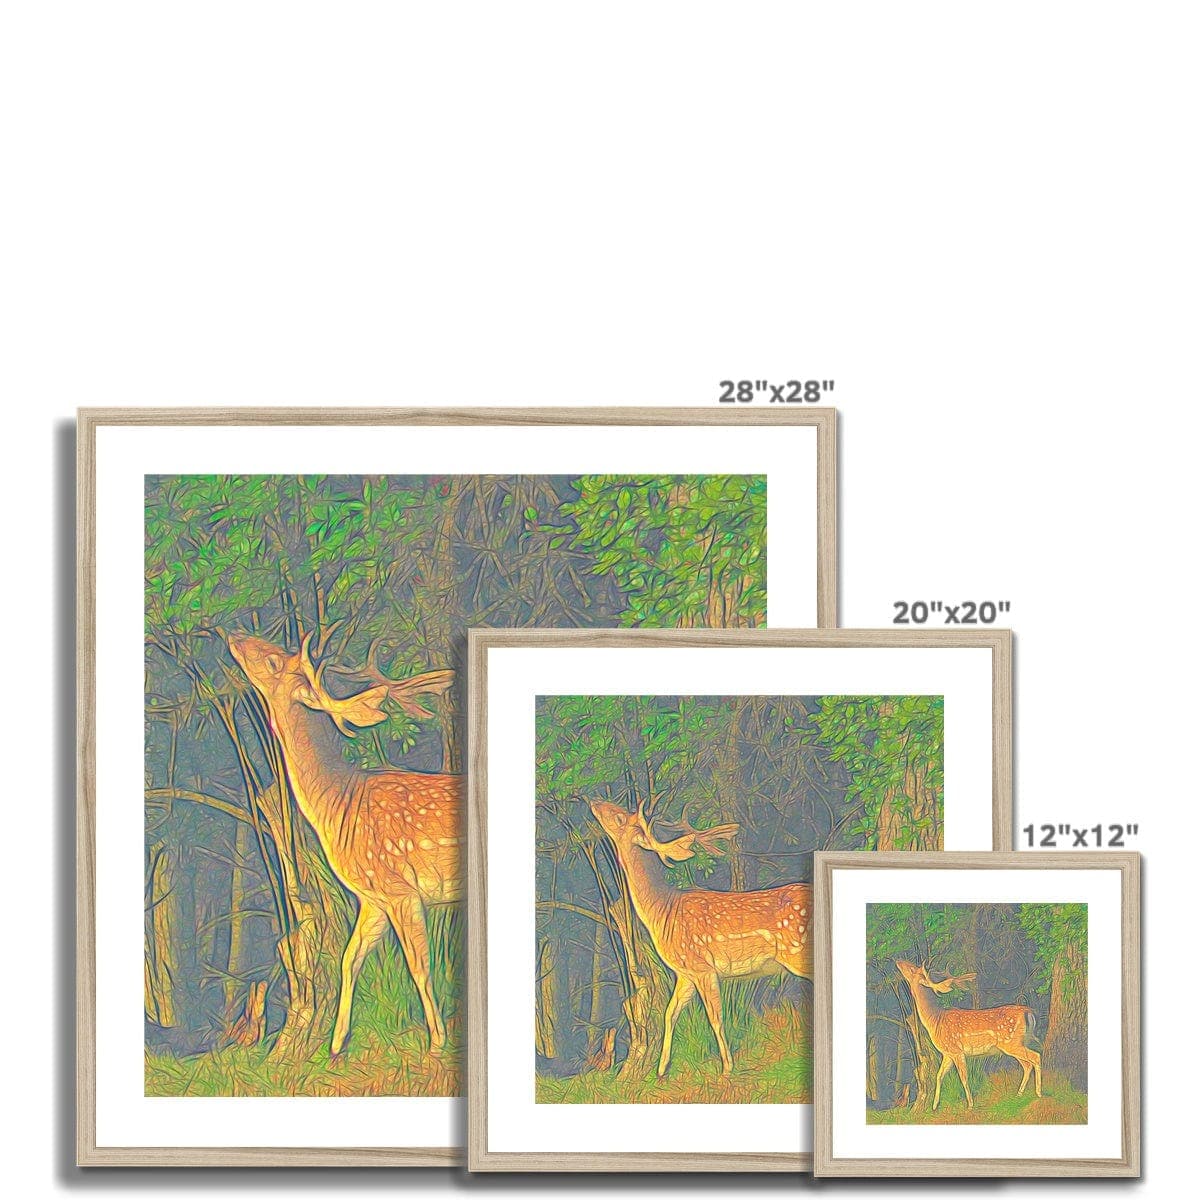 Young deer, Framed & Mounted Print, by Ingrid Hütten